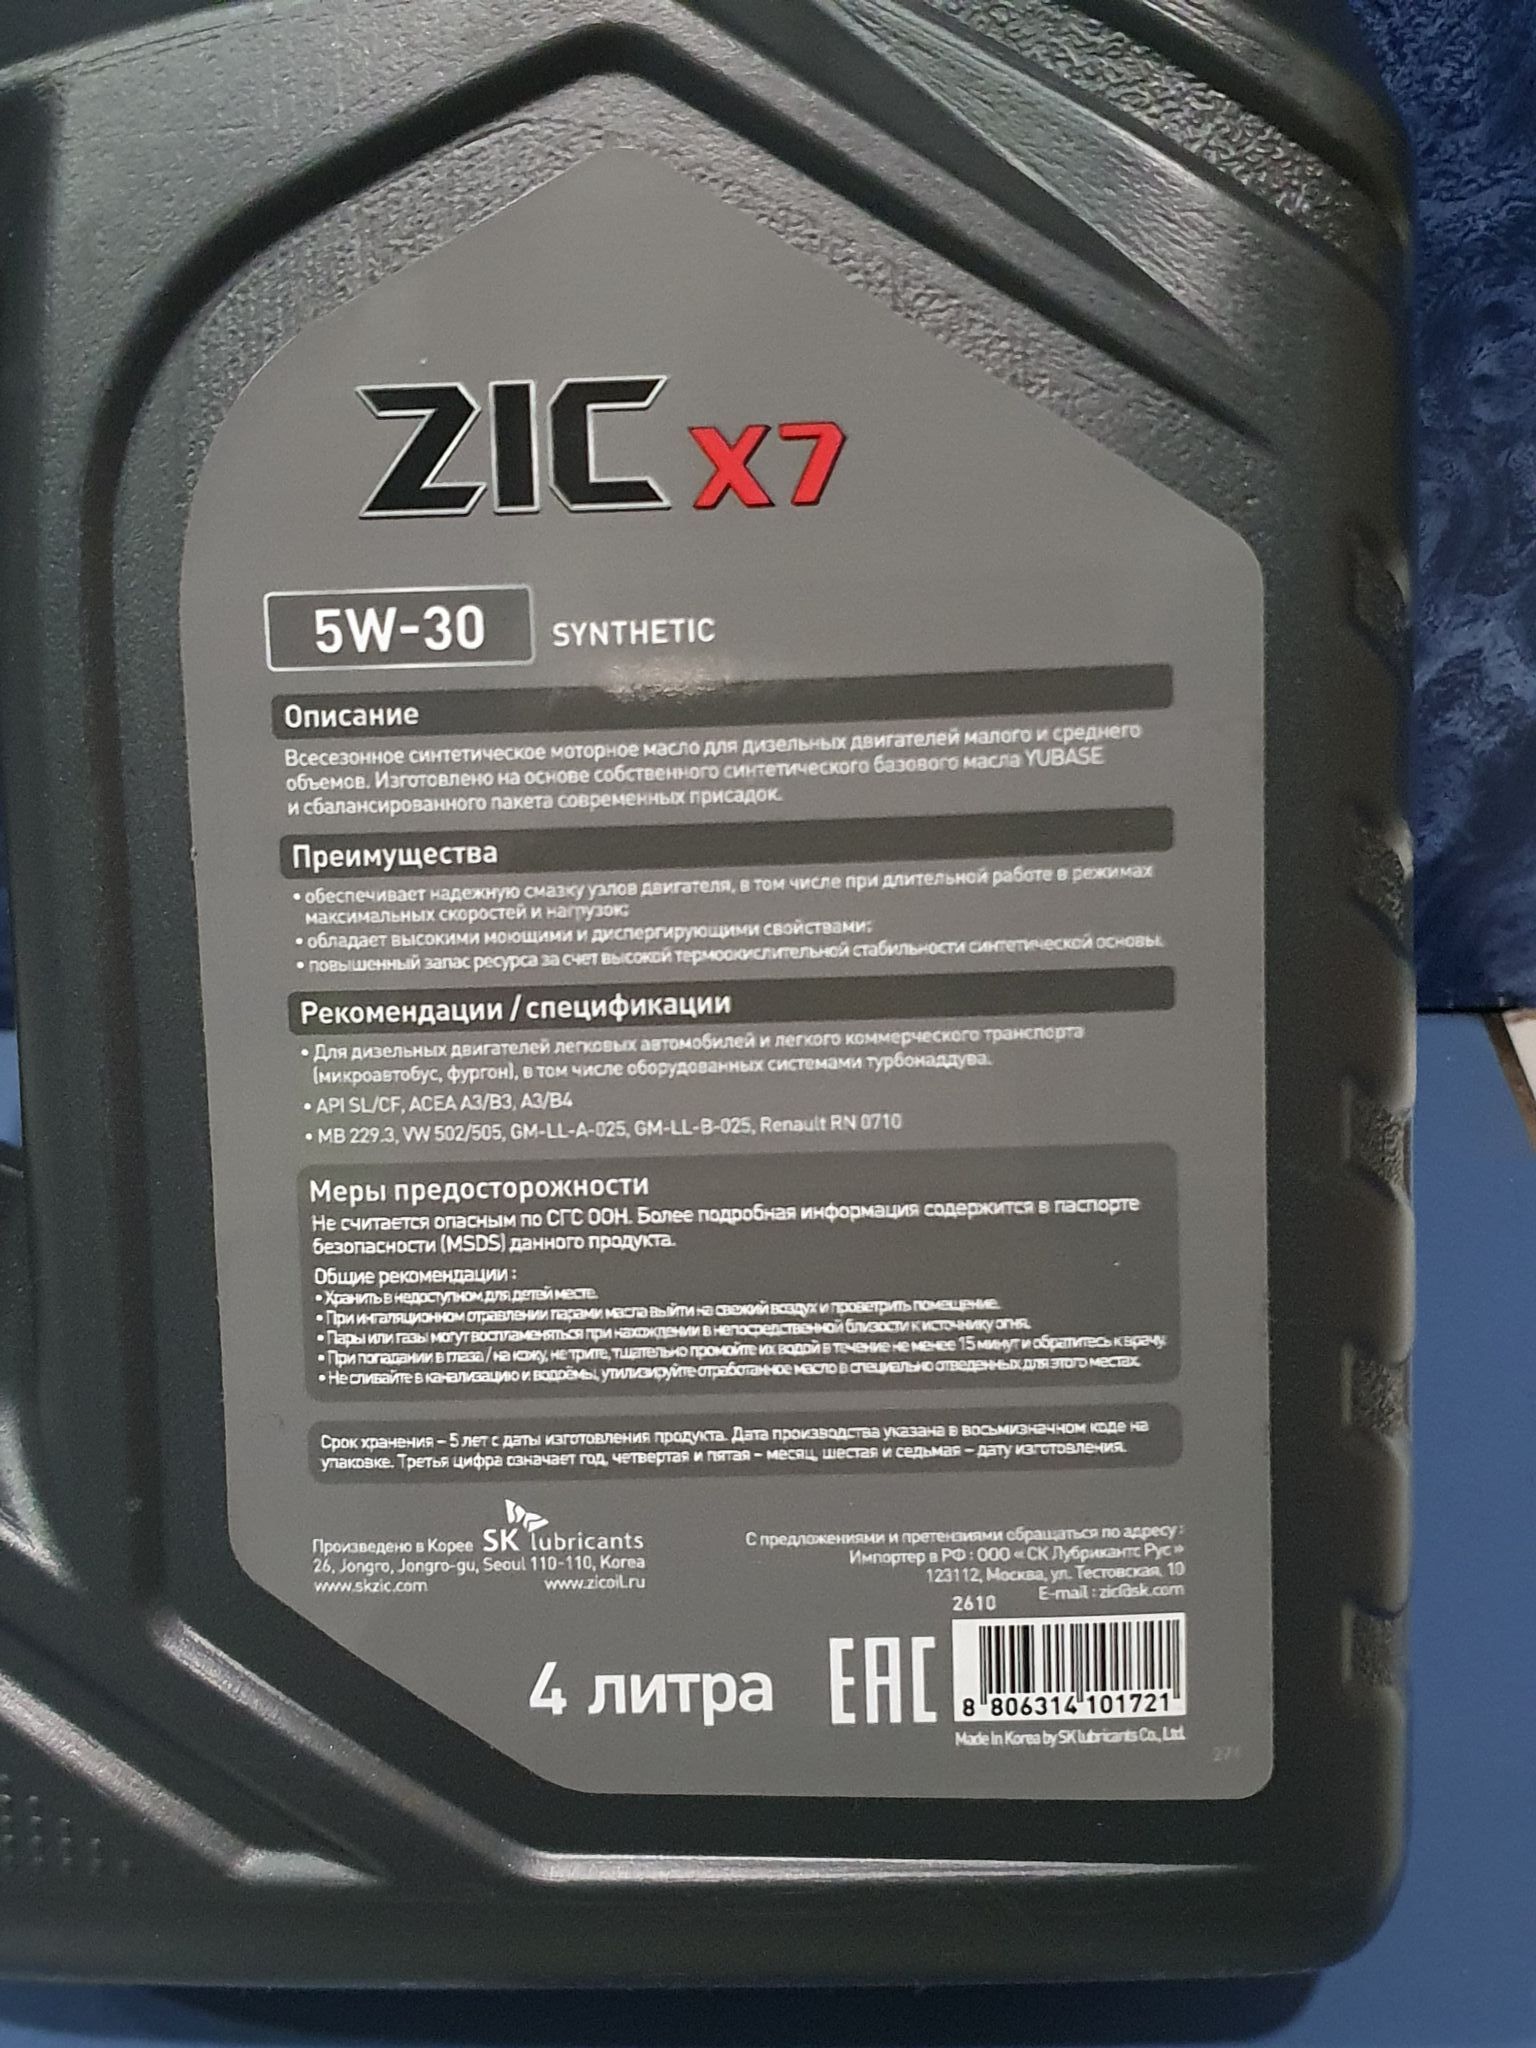 Zic x7 sp. ZIC x7 Diesel 5w30. ZIC x7 Diesel 5w-30 4л. Масло ZIC x7 Diesel 5w30. ZIC x7 Diesel 5w-30 20 л.